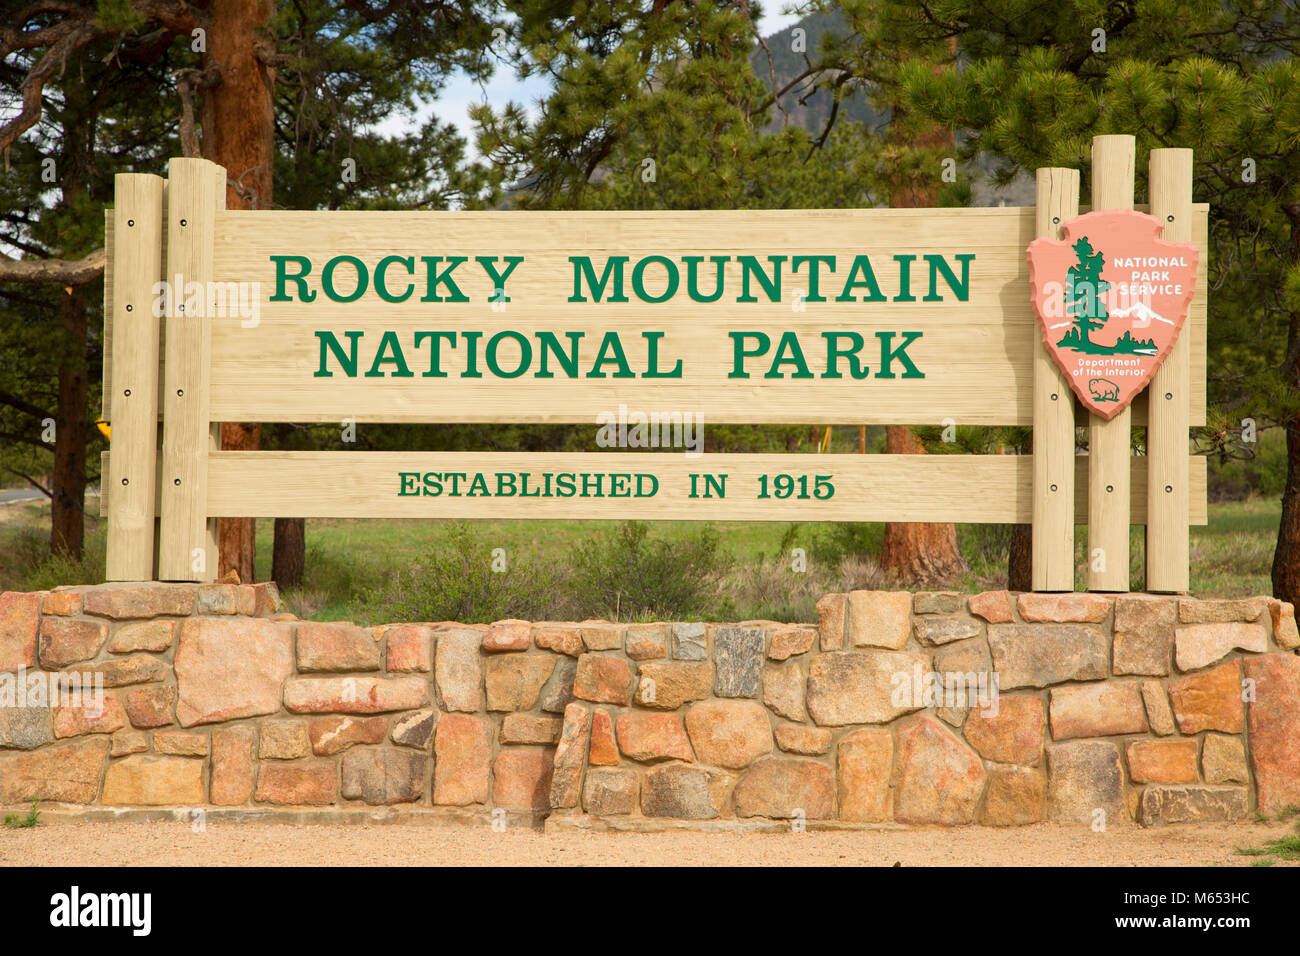 Entrance sign, Rocky Mountain National Park, Colorado Stock Photo